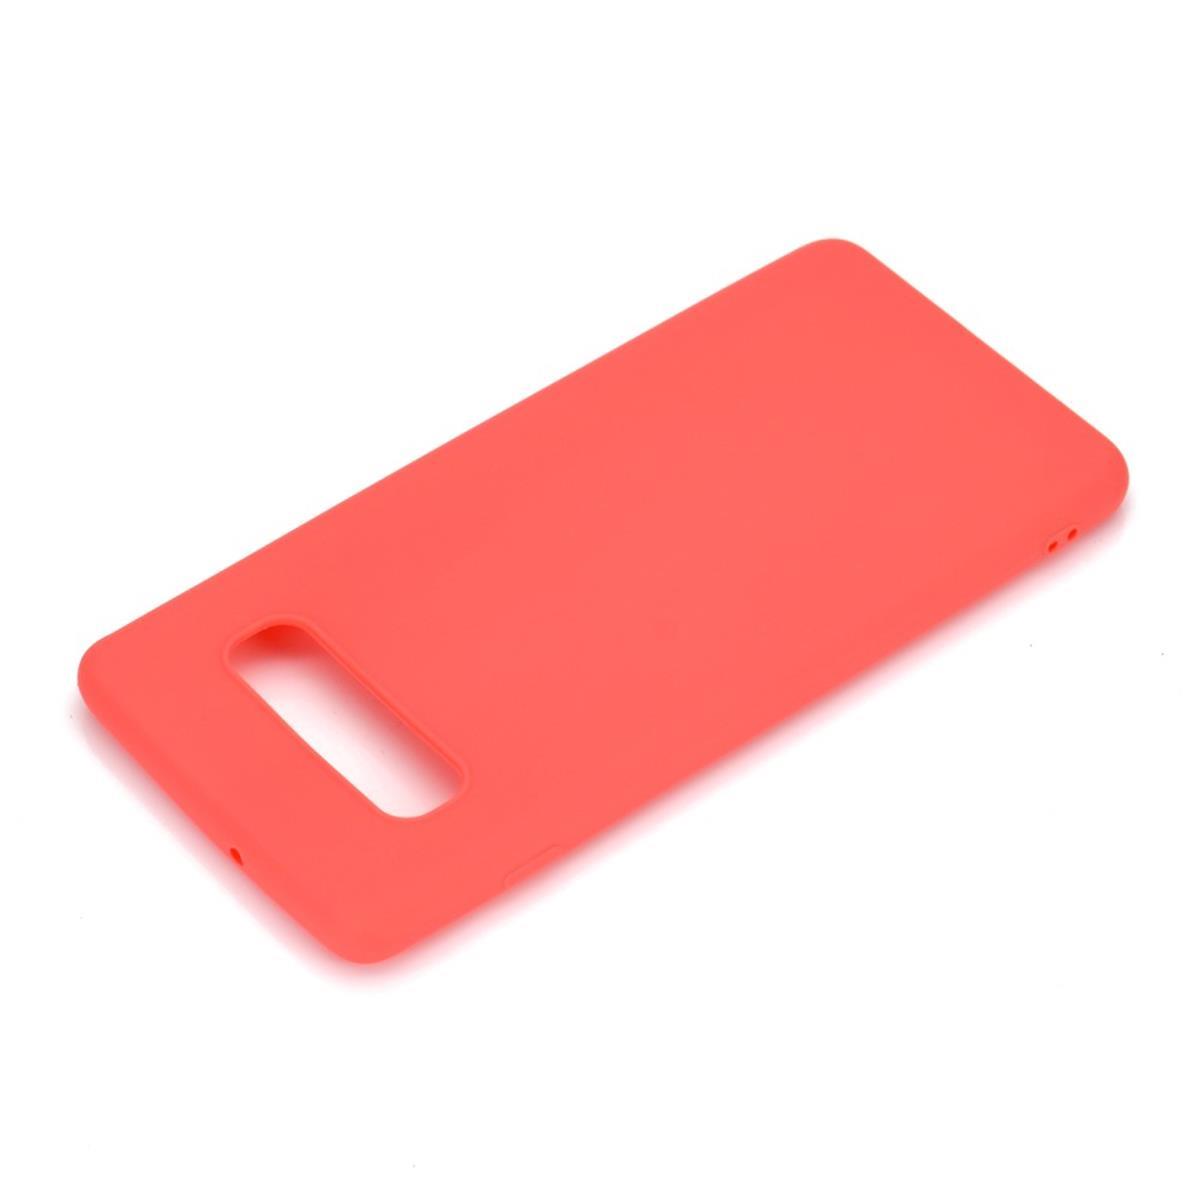 Hülle für Samsung Galaxy S10 Handyhülle Silikon Case Cover Handytasche matt Rot